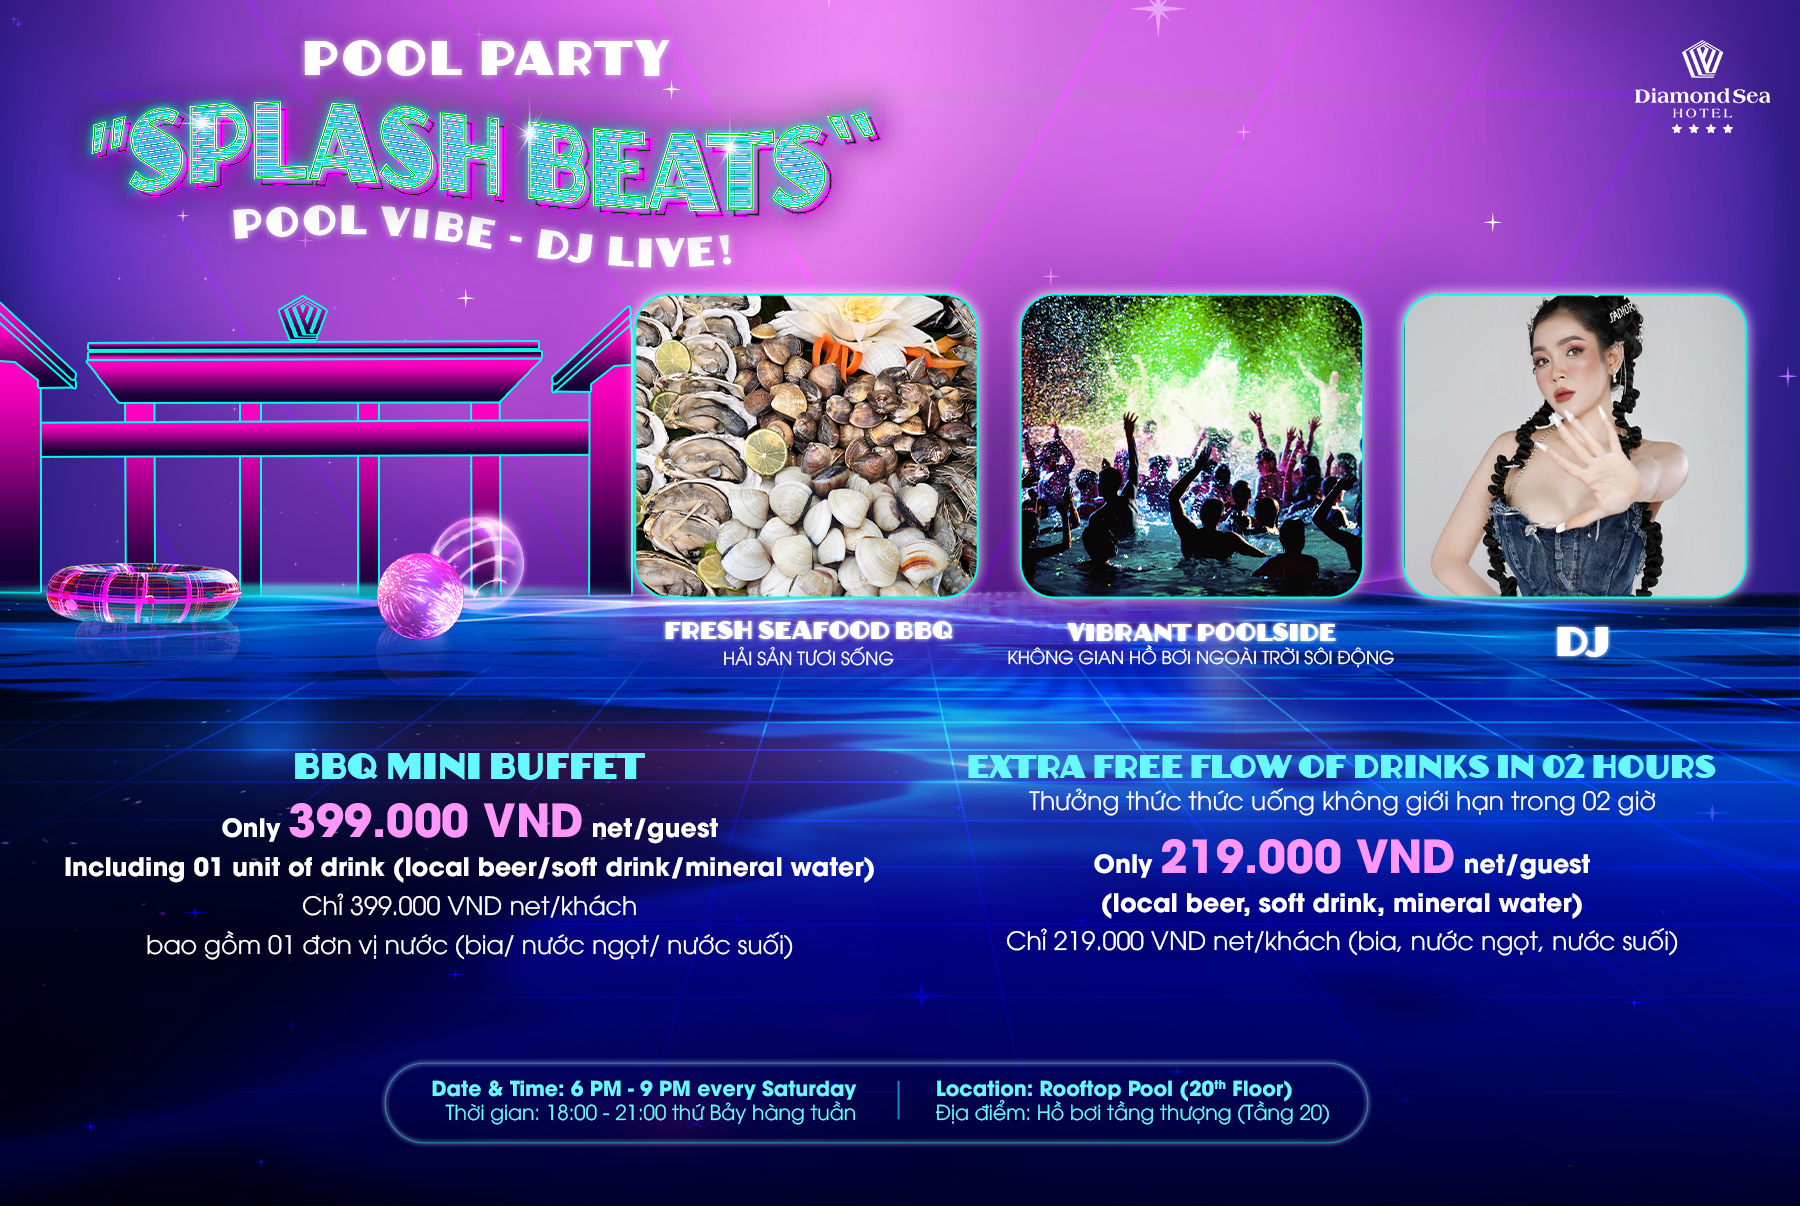 DJ - Pool Party Mini Buffet “Splash Beats!”